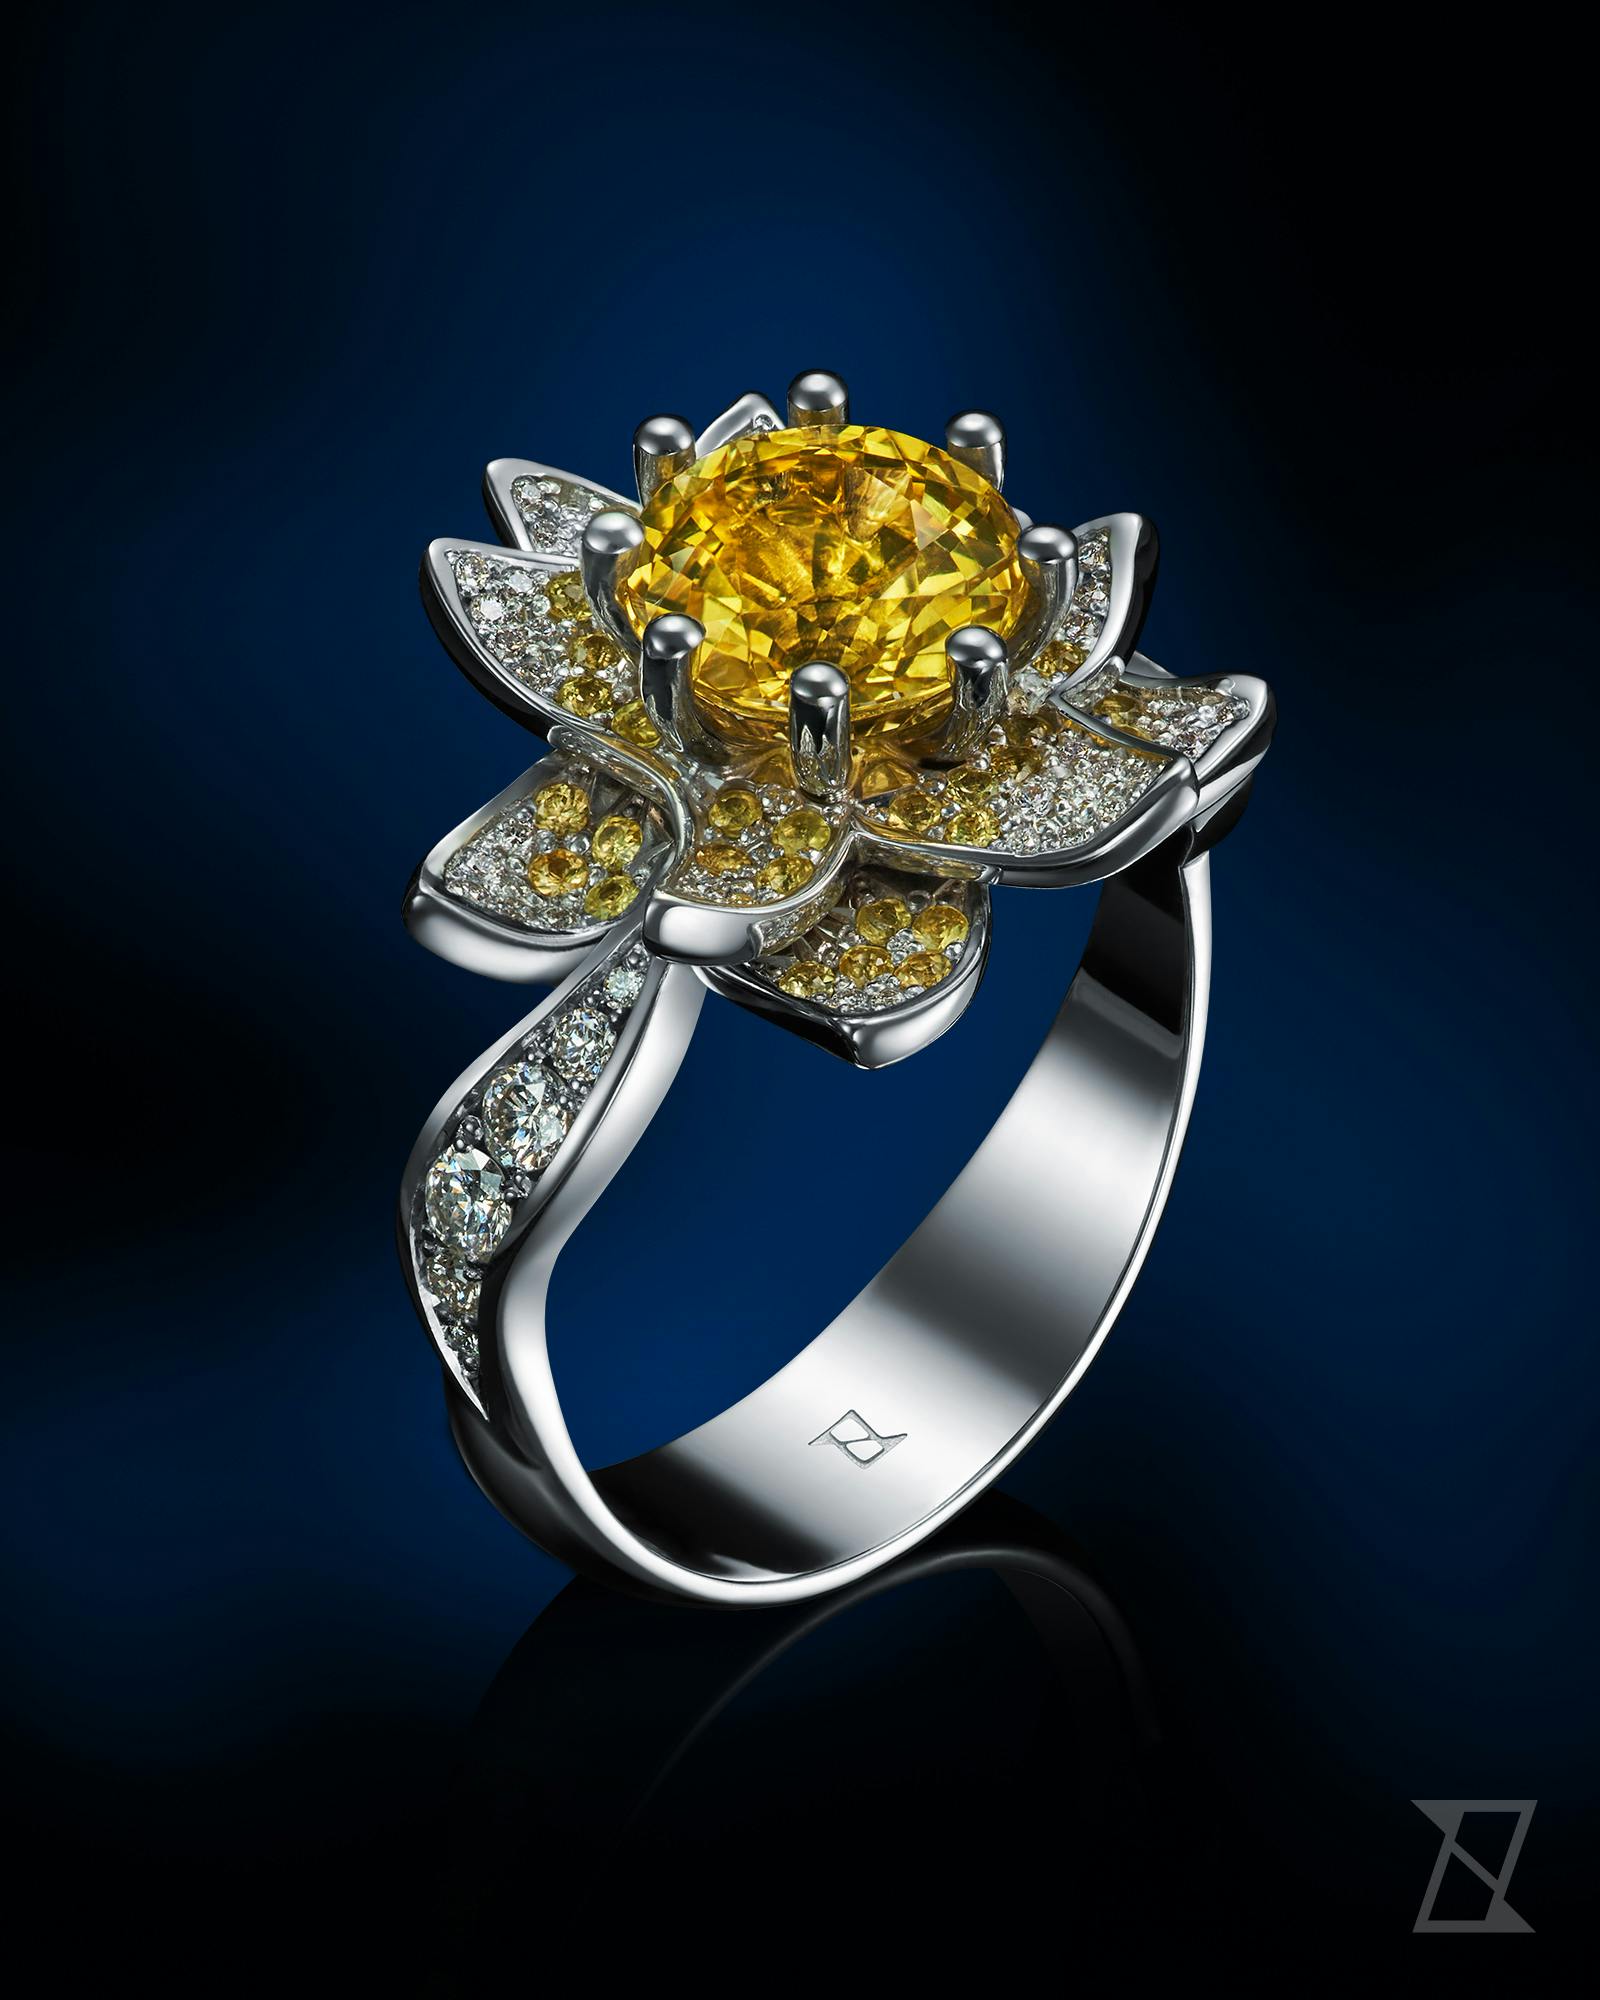 Pierścionek zaręczynowy na zamówienie w formie kwiatu wysadzany szafirami i diamentami.